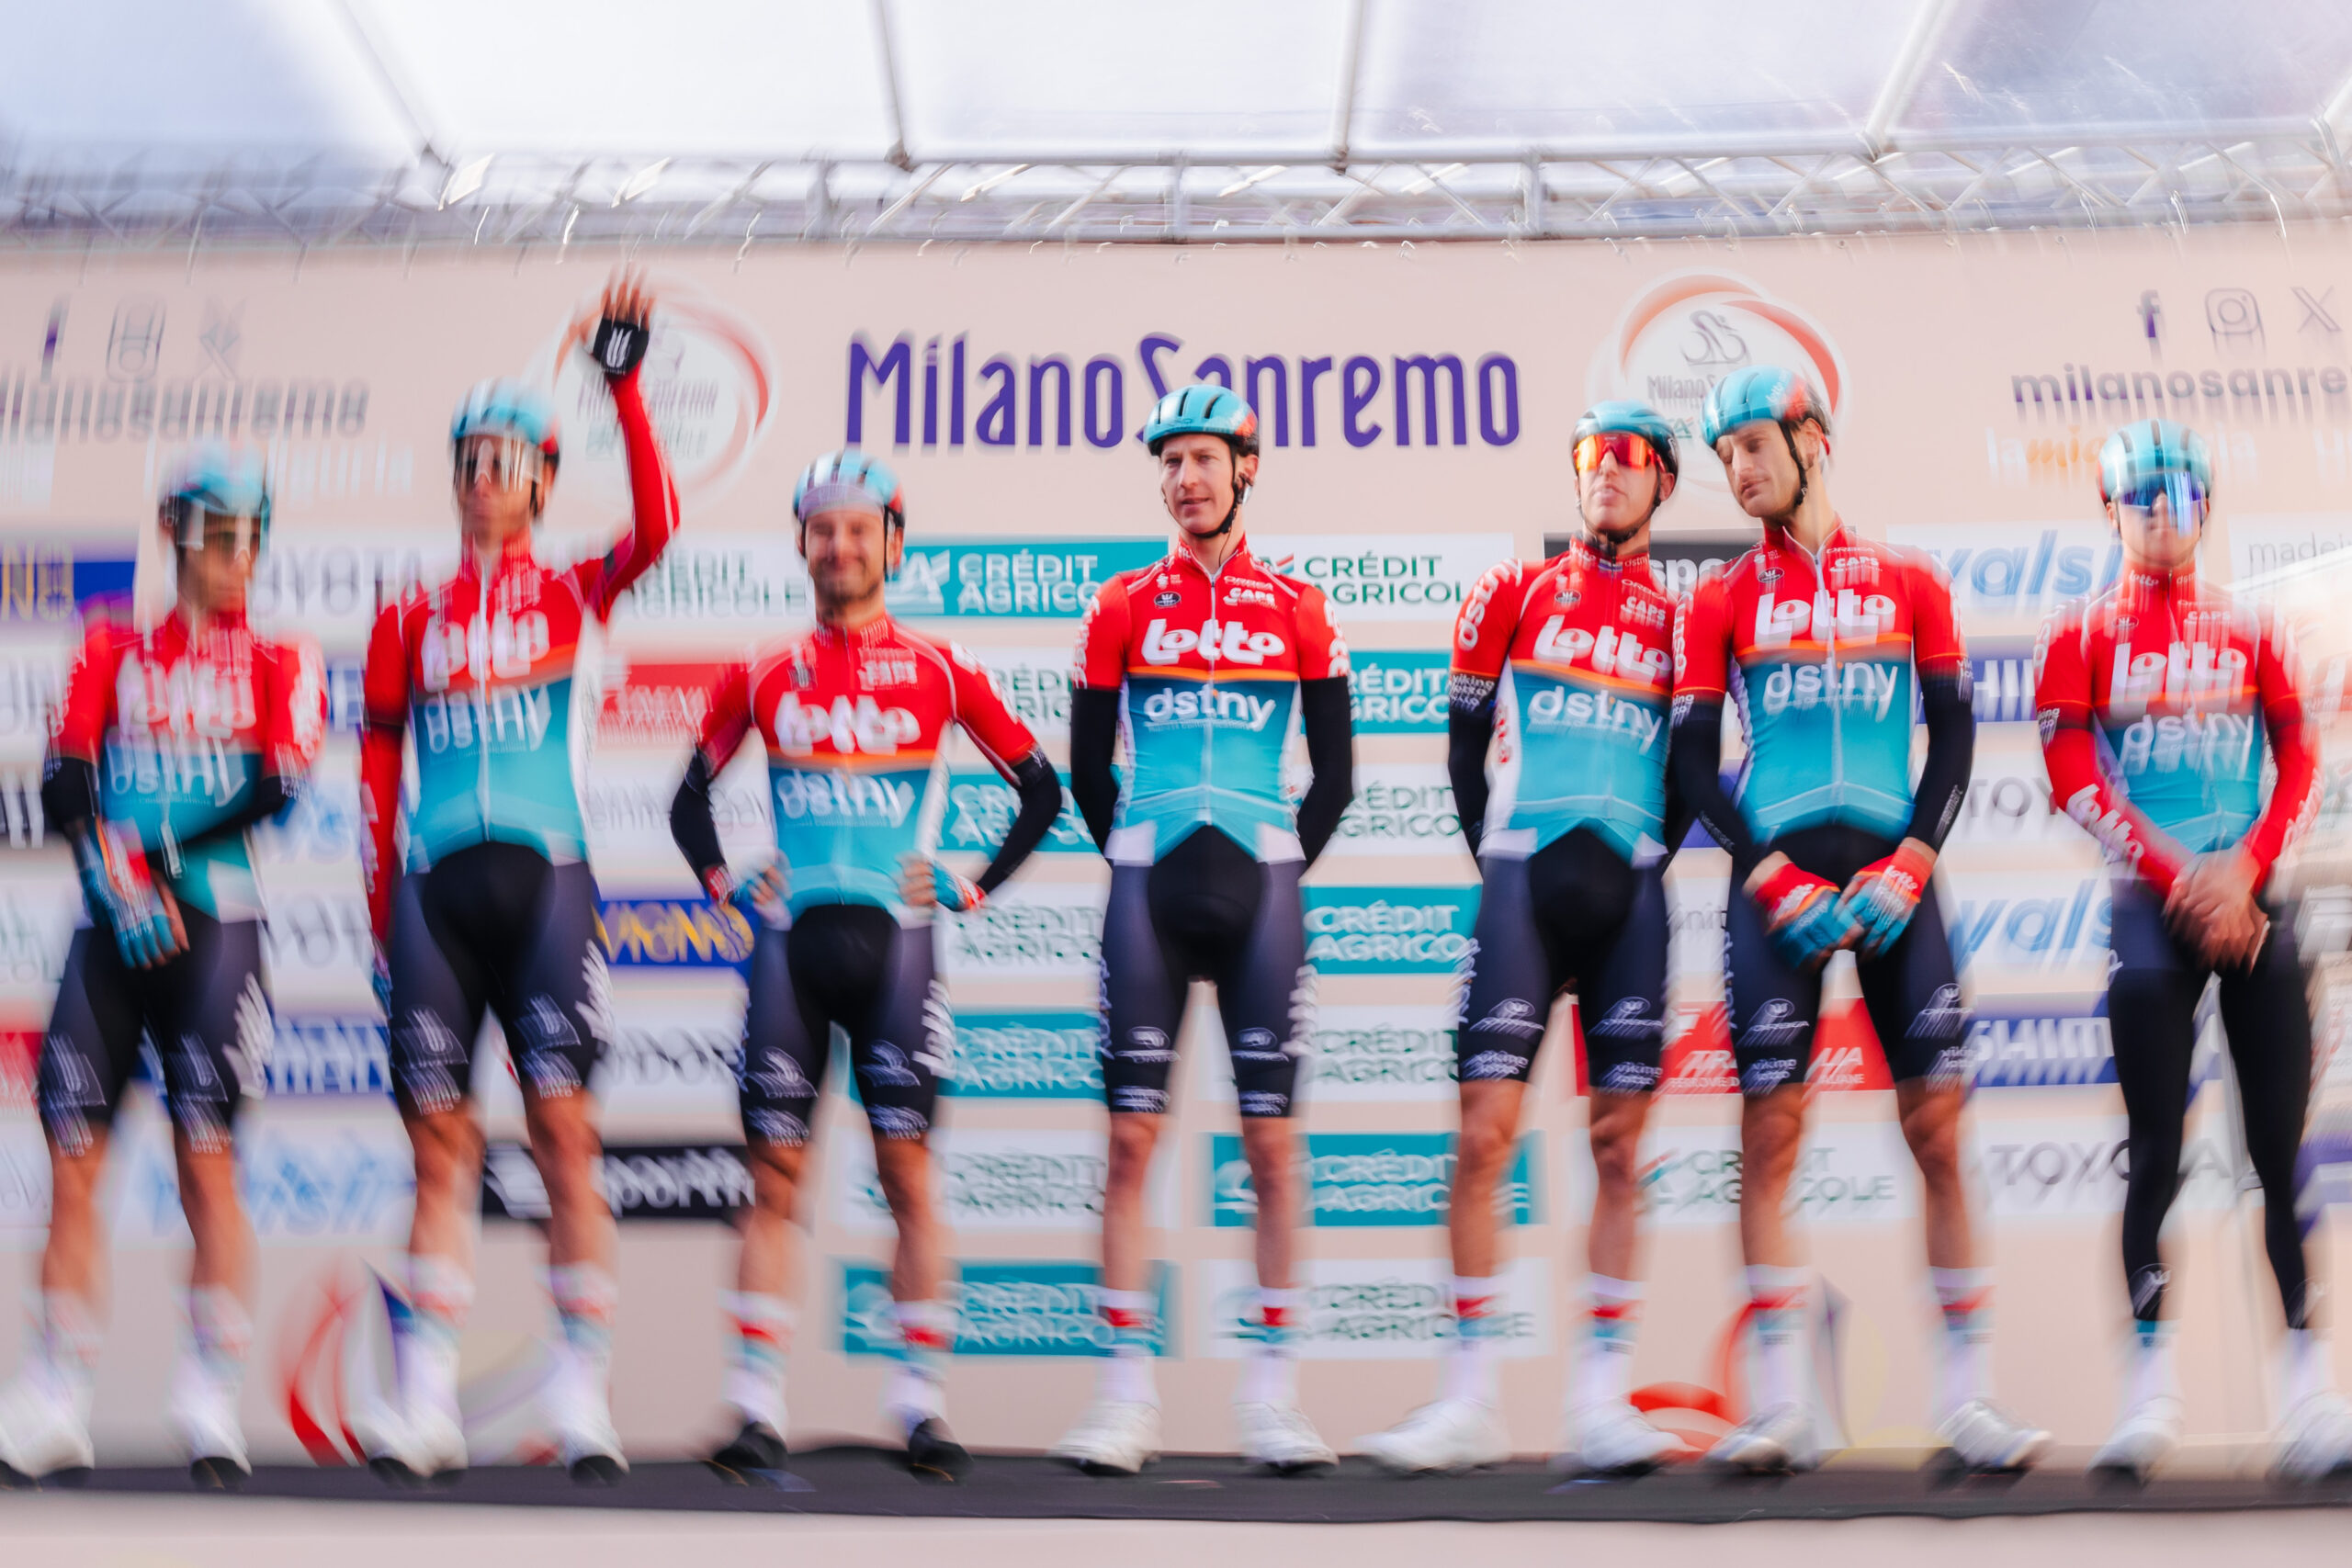 Lotto-Dstny verabschiedet sich nach einer hervorragenden Leistung bei Mailand-San Remo aus Italien.